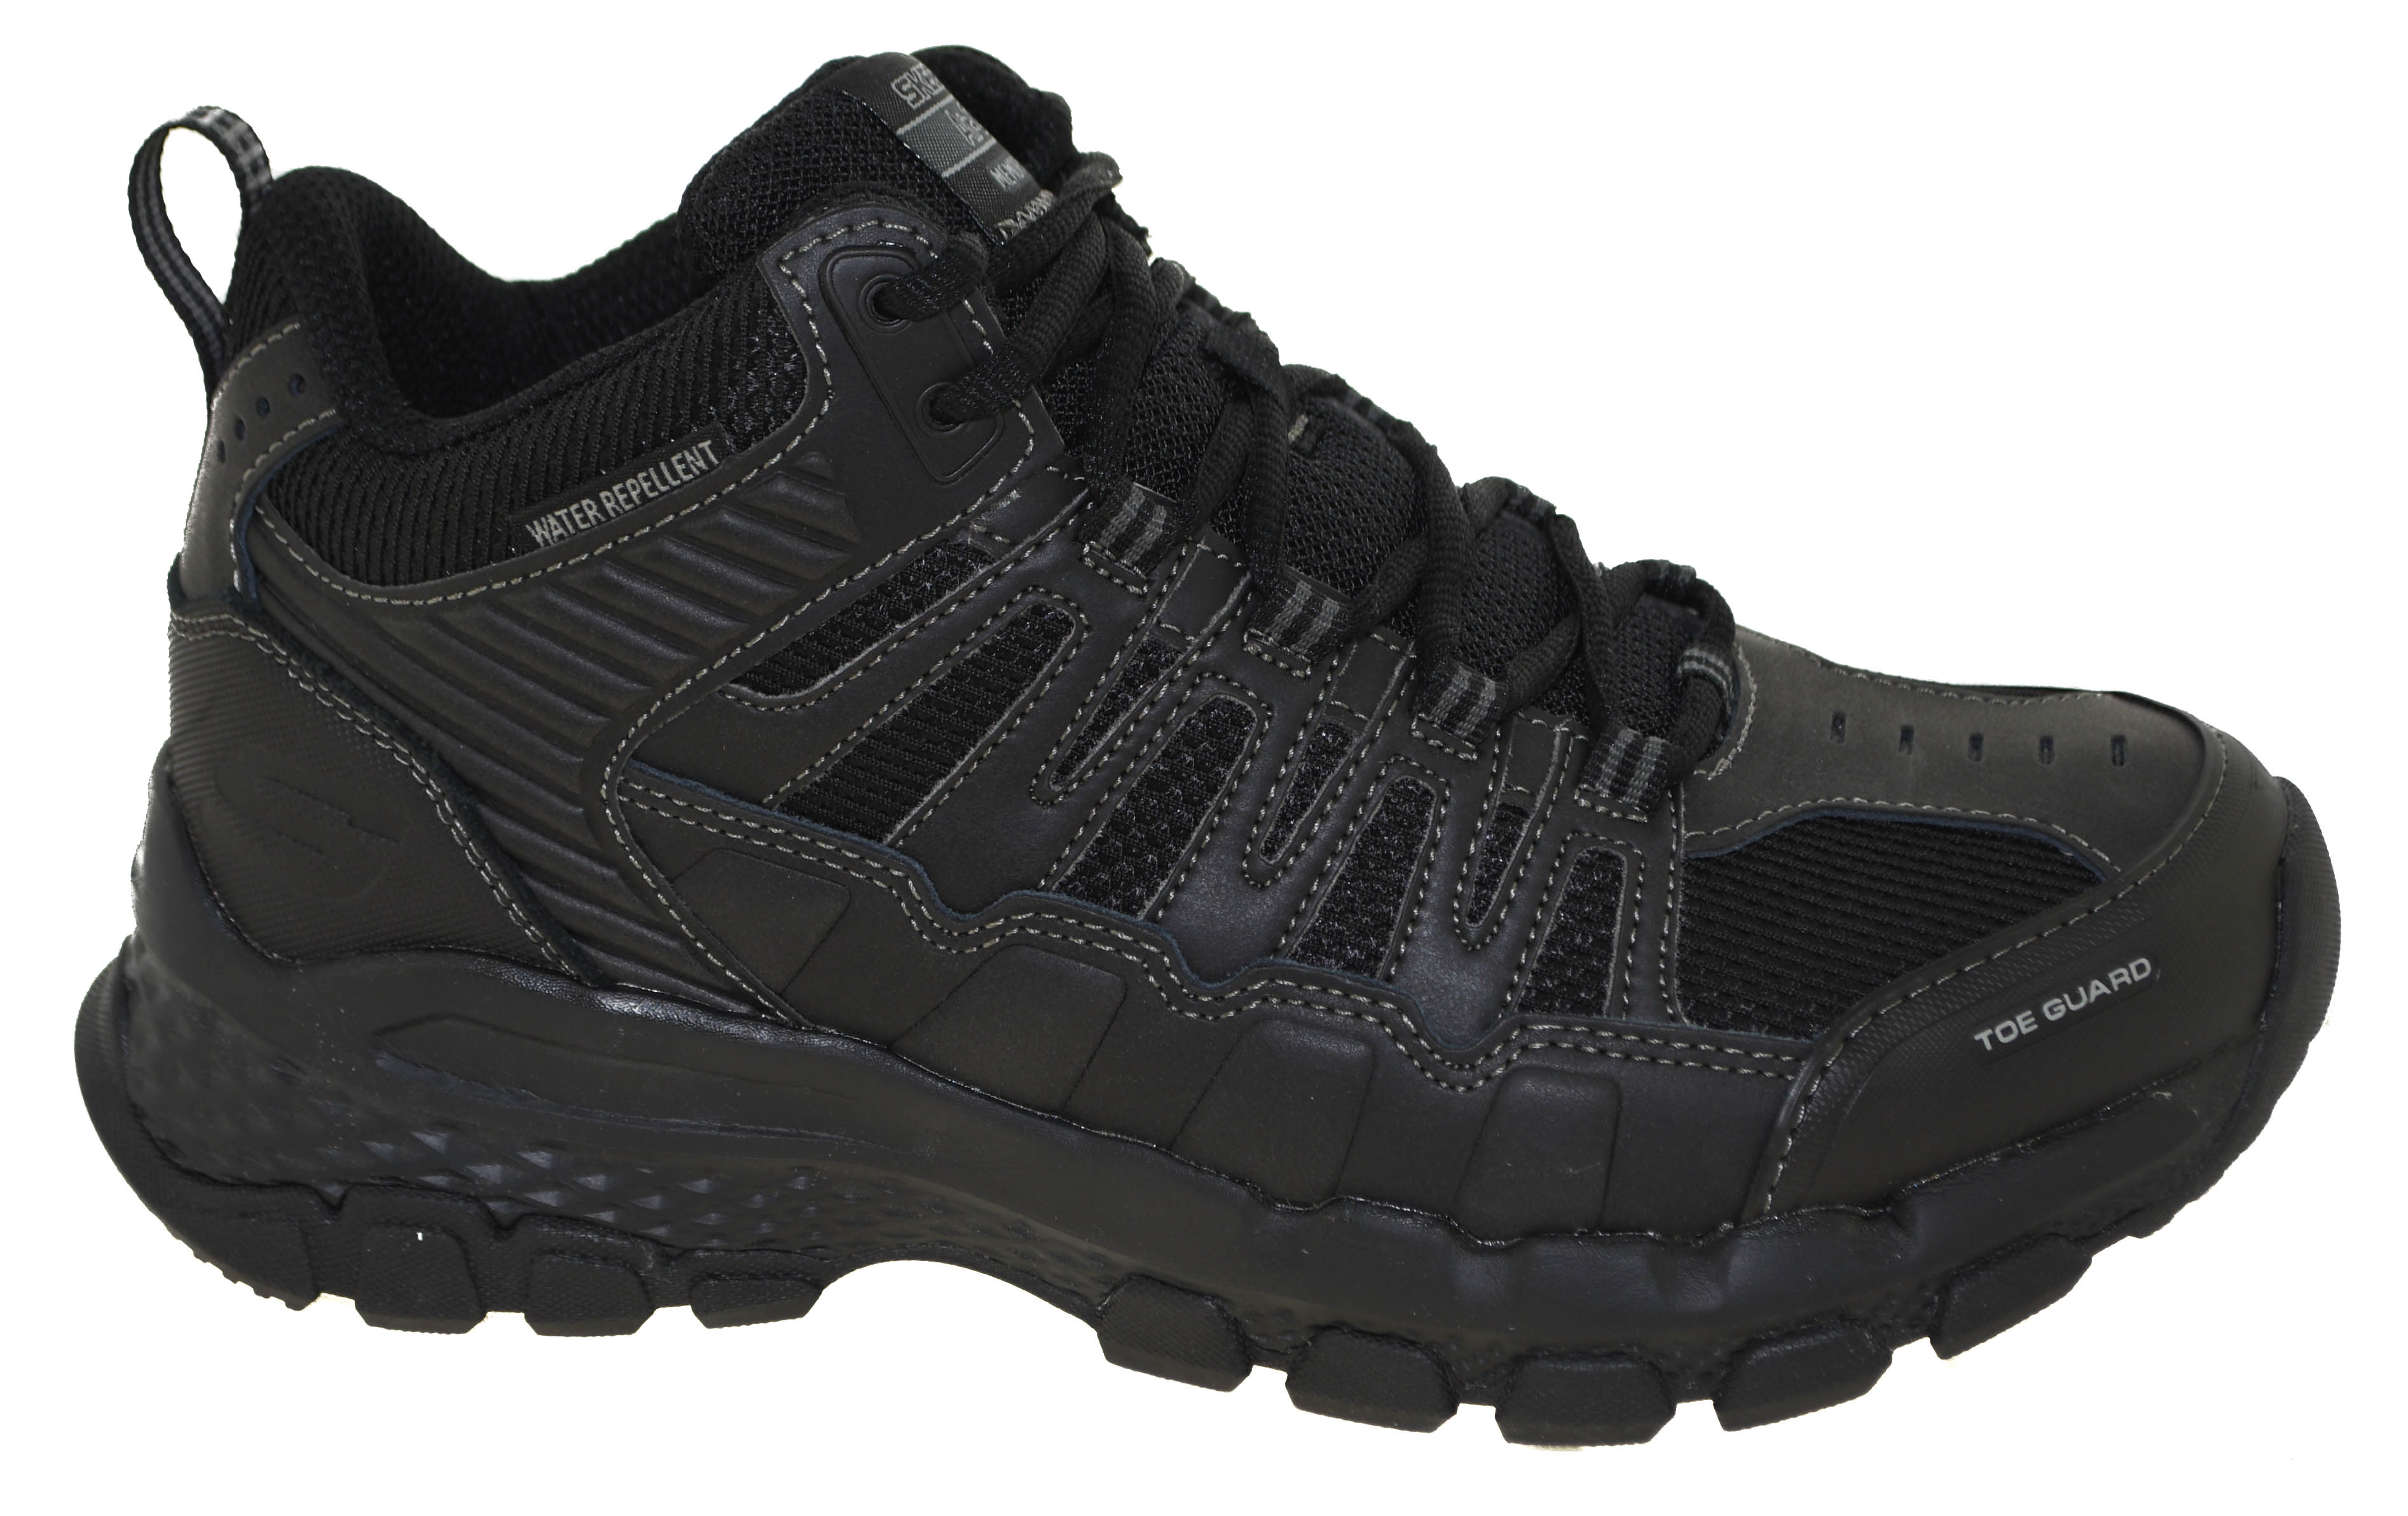 Skechers Men's Outland 2.0 Girvin Hiking Boot Black Style 51587 | eBay